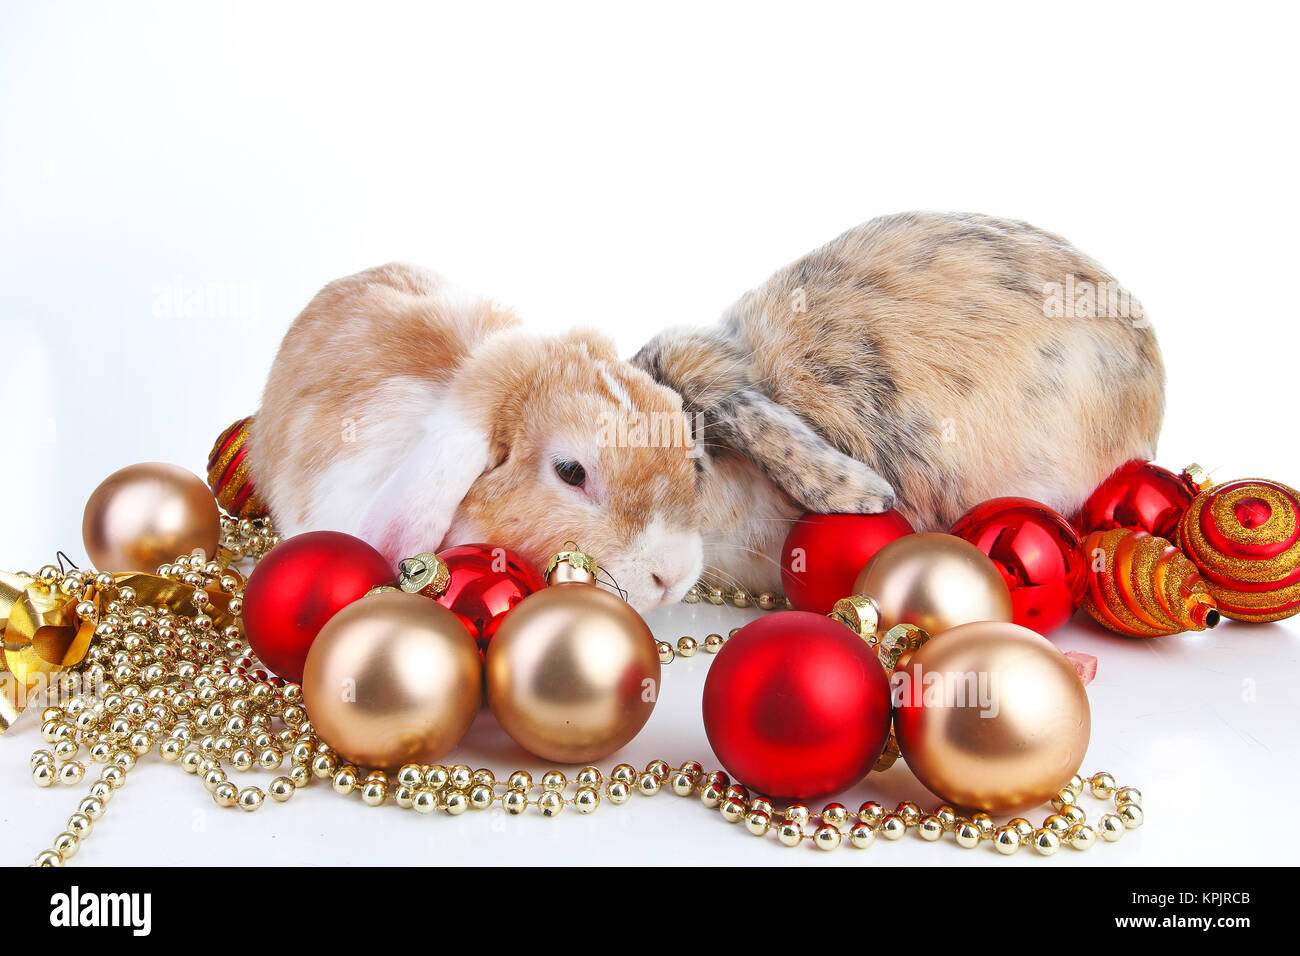 Animali di natale. Pet di coniglio nano lop olandese wo colorato di arancione bunny i conigli di celebrare il Natale con oro rosso Pallina natale ornamenti sulla isolato Foto Stock